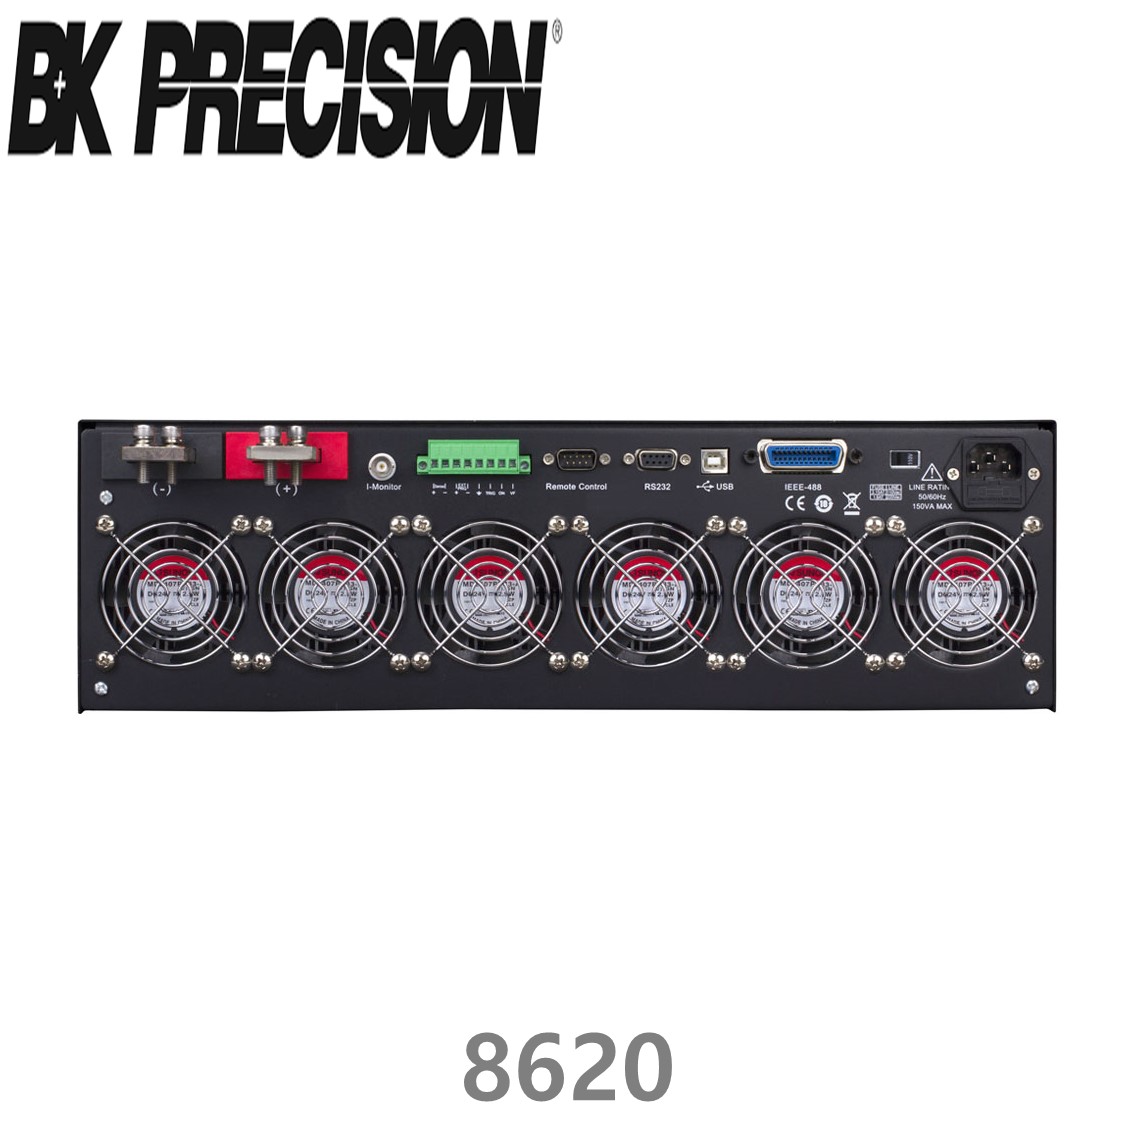 [ BK PRECISION ] BK 8620, 120V/480A(3000W), DC Electronic Load, DC전자부하기, B&K 8620